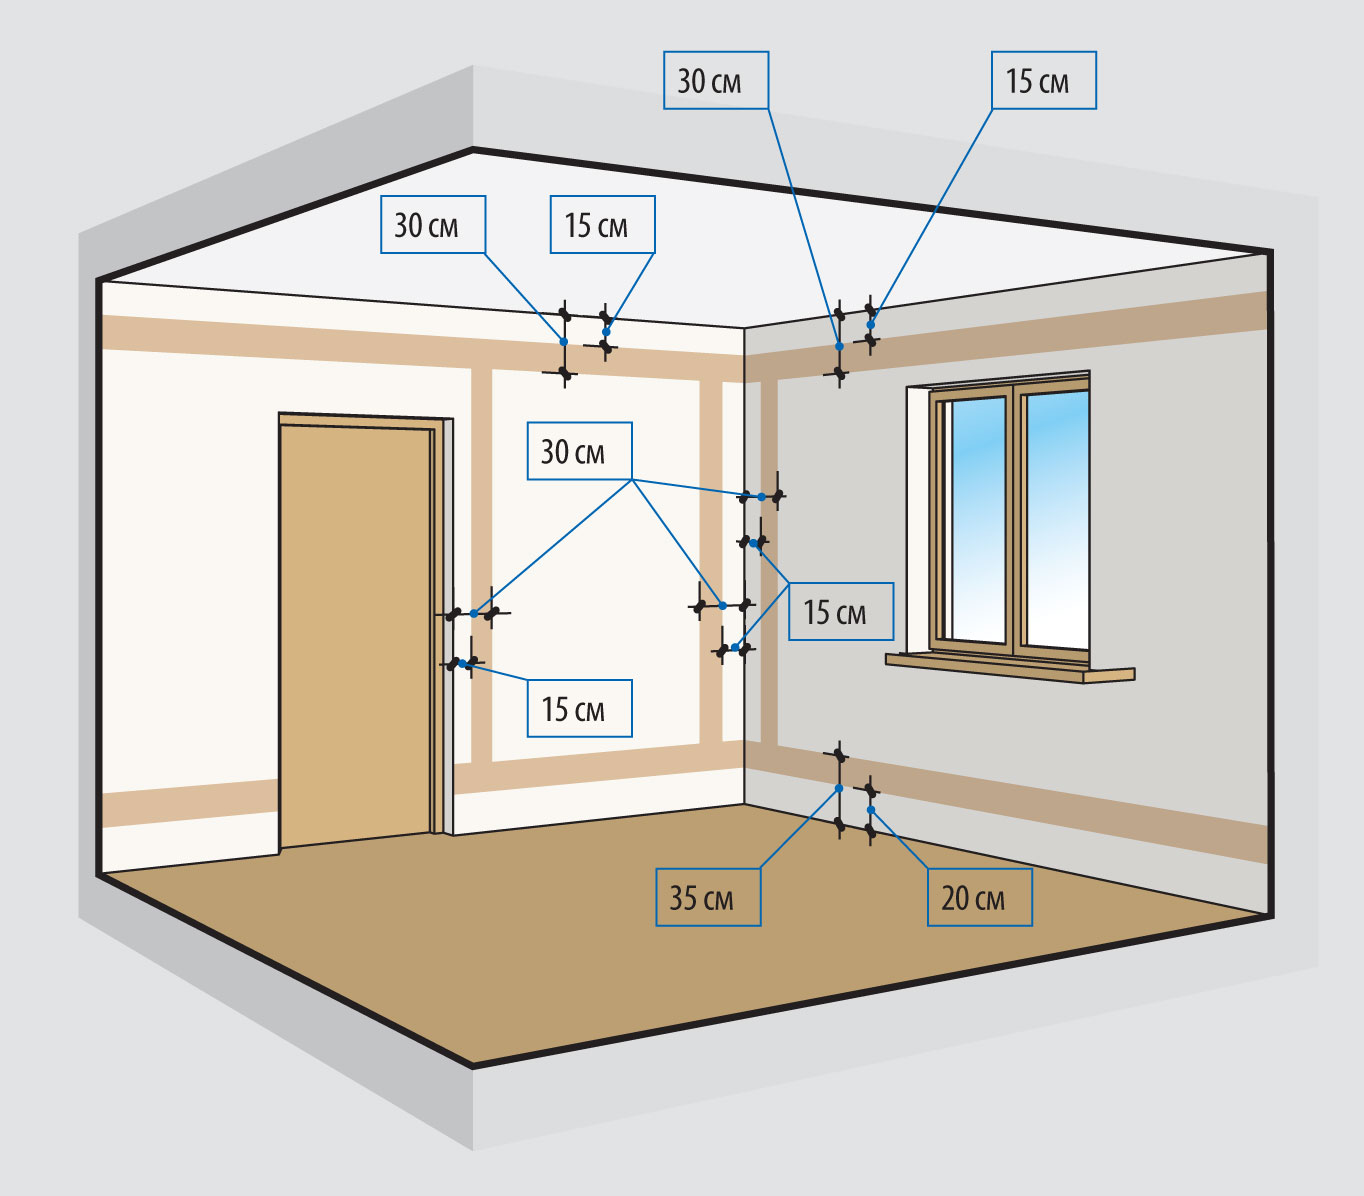 Прокладка проводки по потолку в квартире: правила штробления и крепления